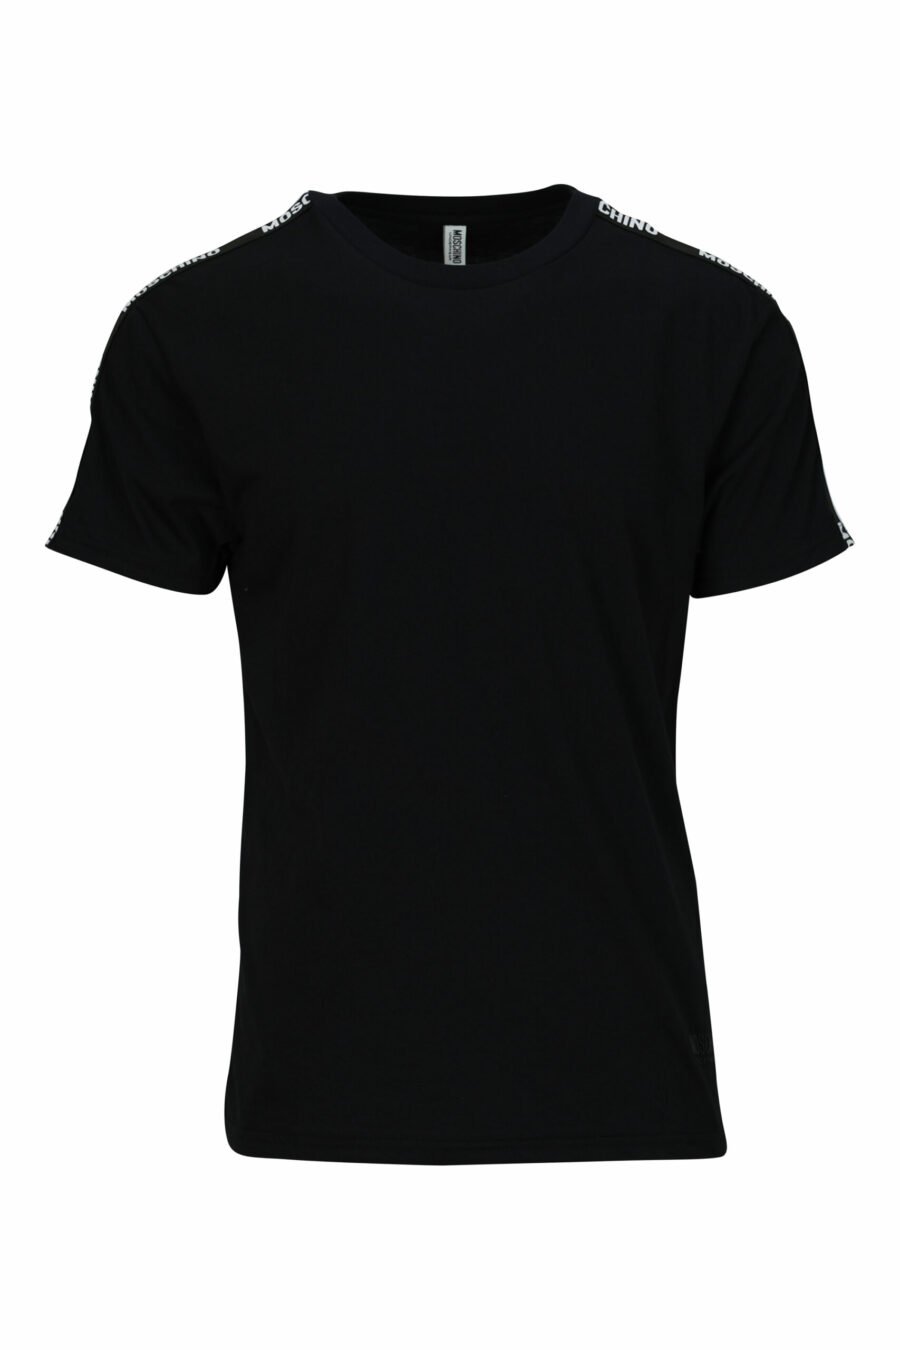 T-shirt noir avec mini-logo sur ruban - 667113602967 en échelle